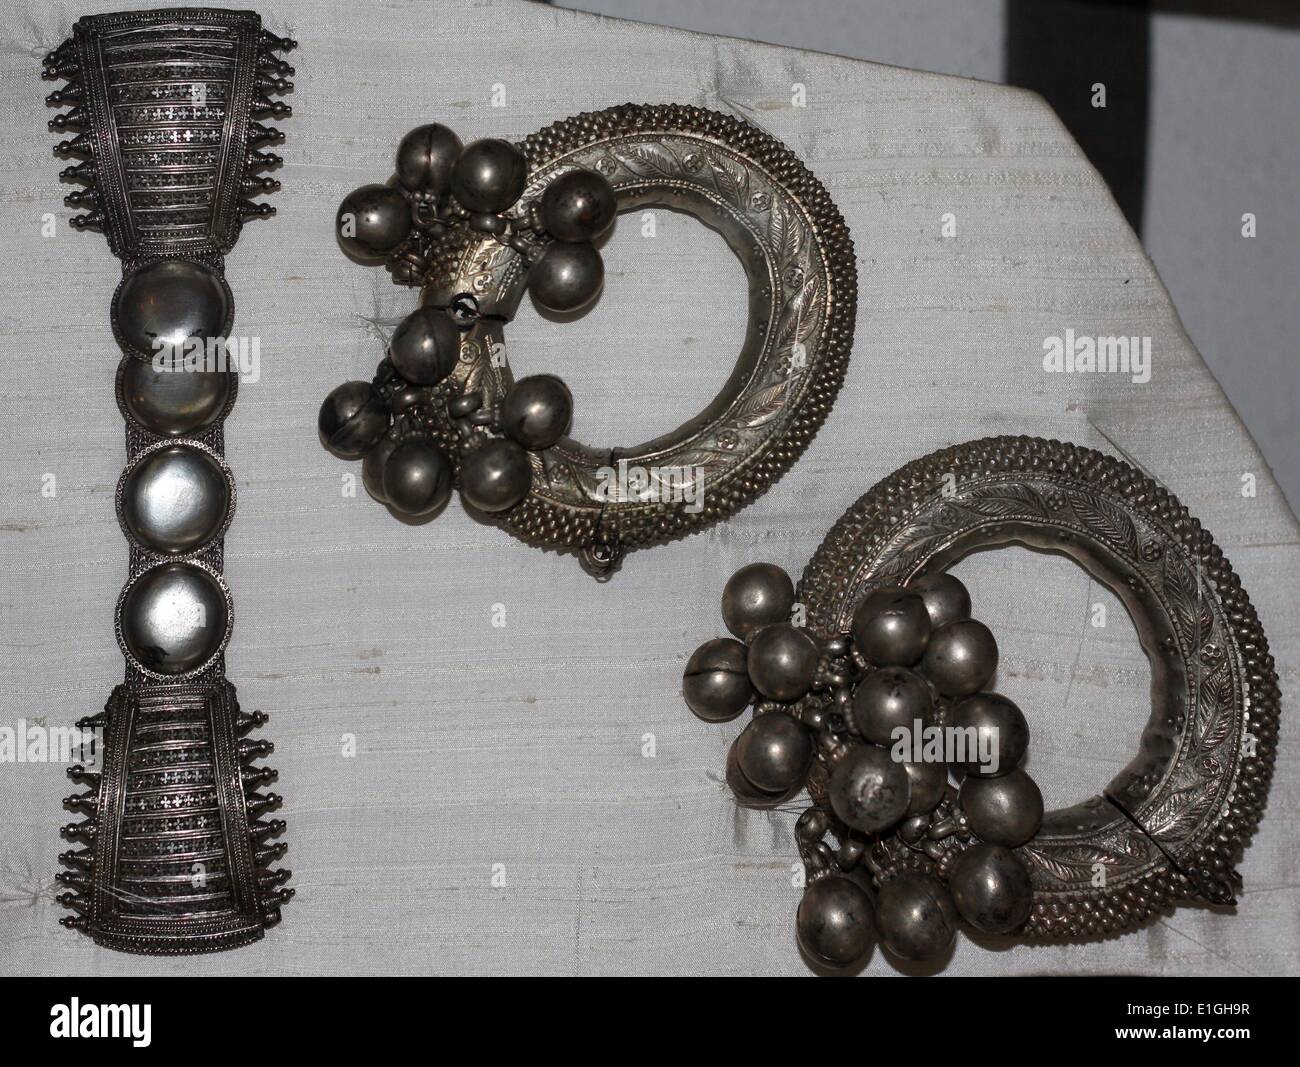 Adornos de plata (cuerpo) de joyería de la India del siglo XIX Foto de stock